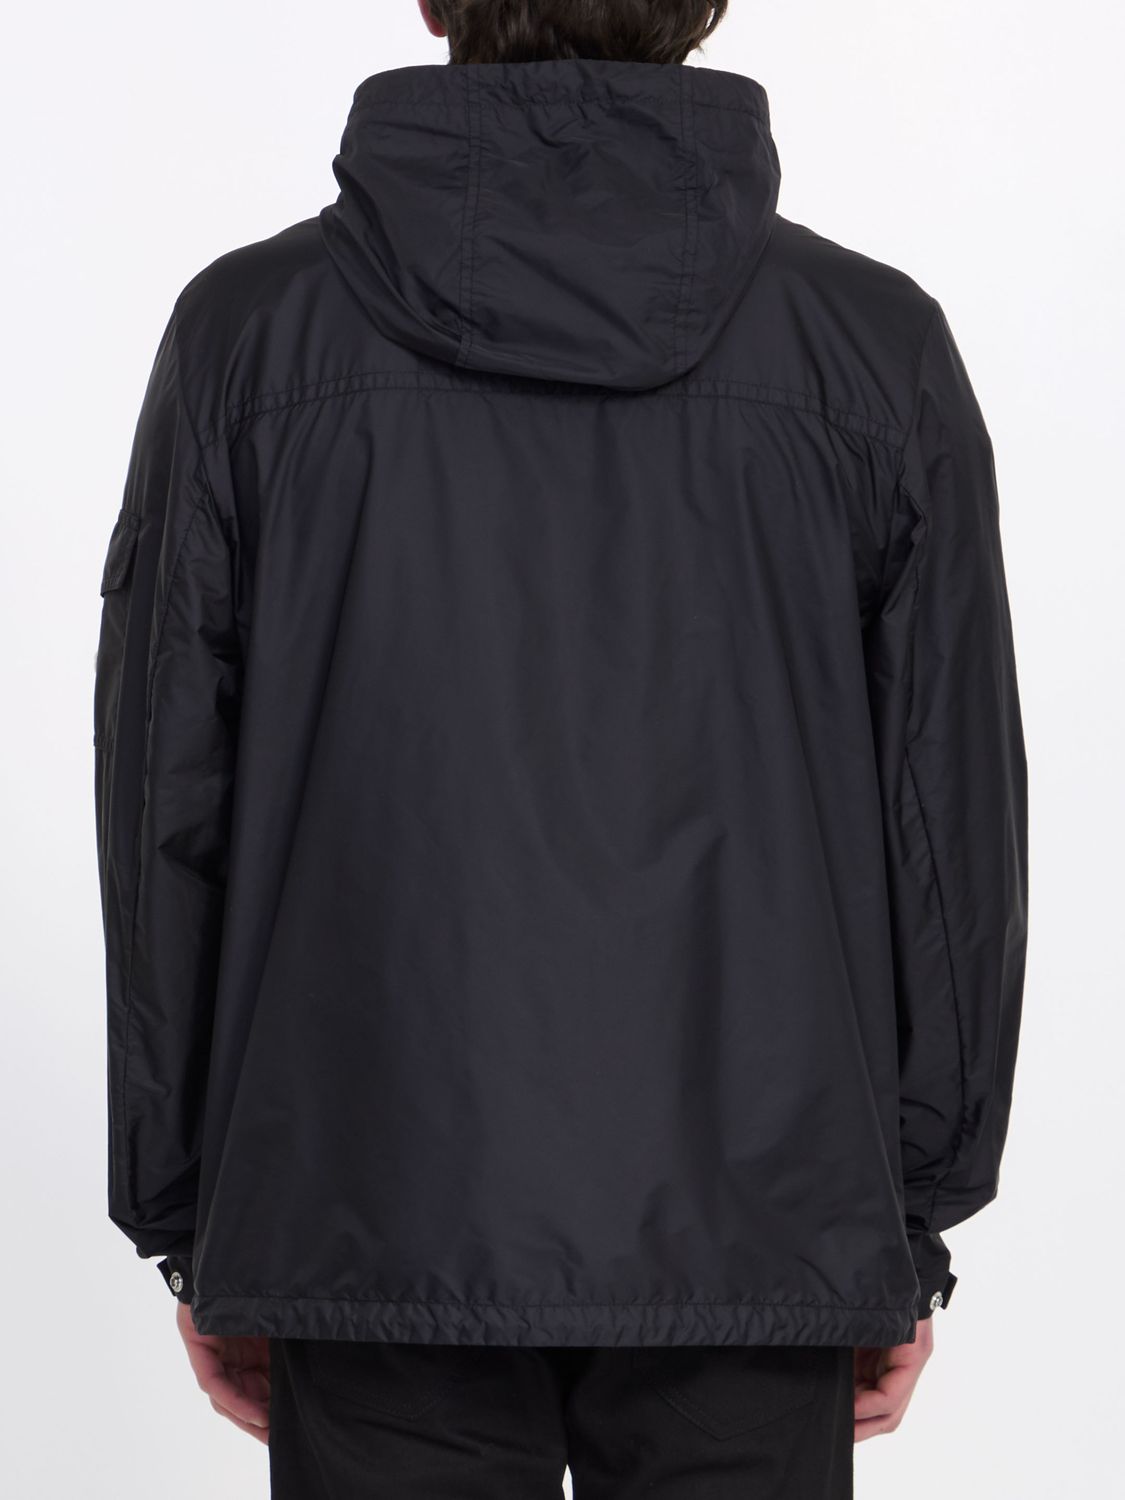 女性用ブラックミドル丈パーカジャケット、メッシュディテール付き